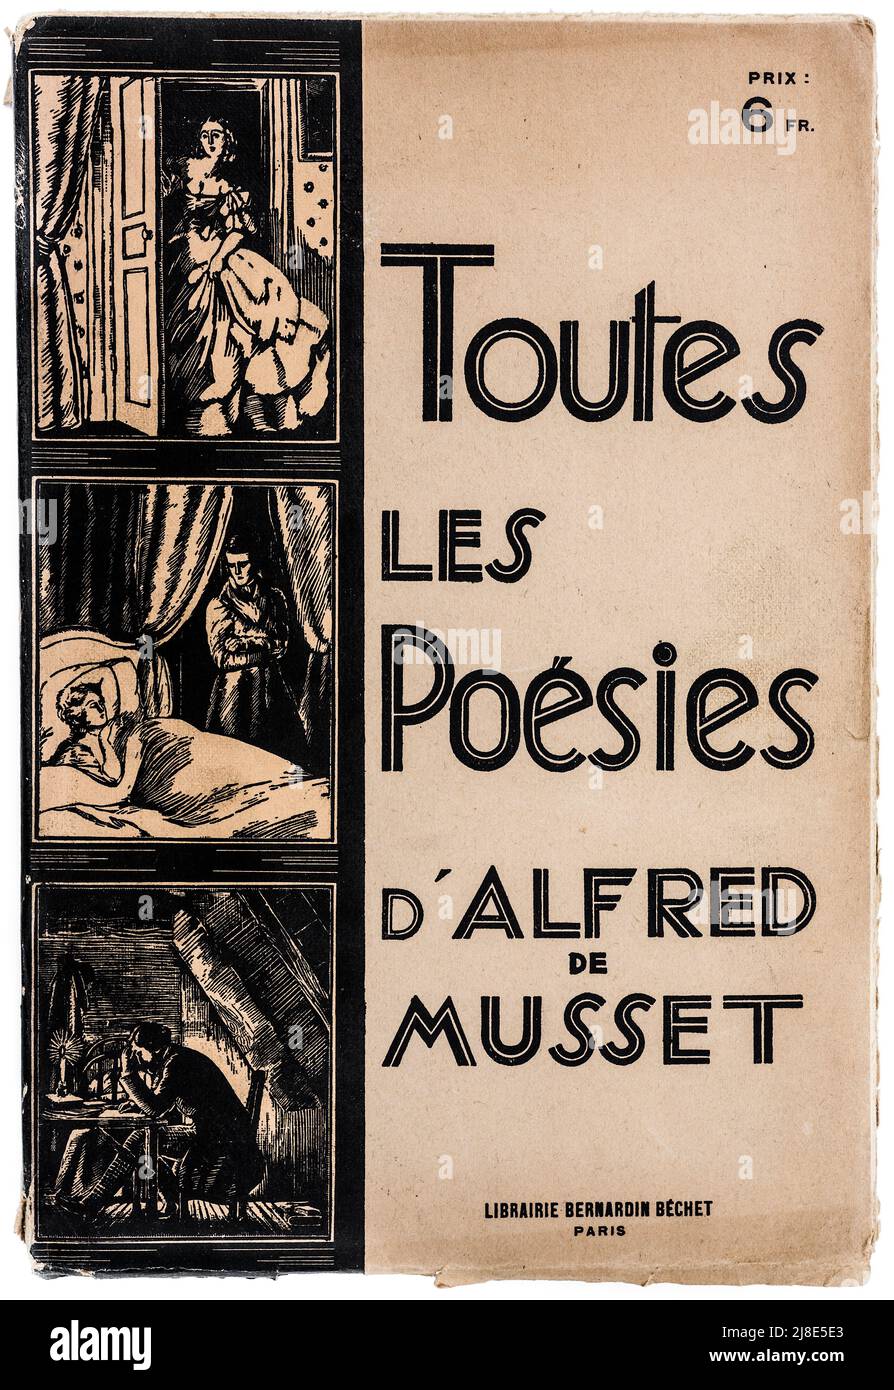 Cover von 'Totes les Poésies d'Alfred Musset' (Alle Gedichte von Alfred Musset), veröffentlicht von Librairie Bernardin-Béchet, Ende 1800s. Stockfoto